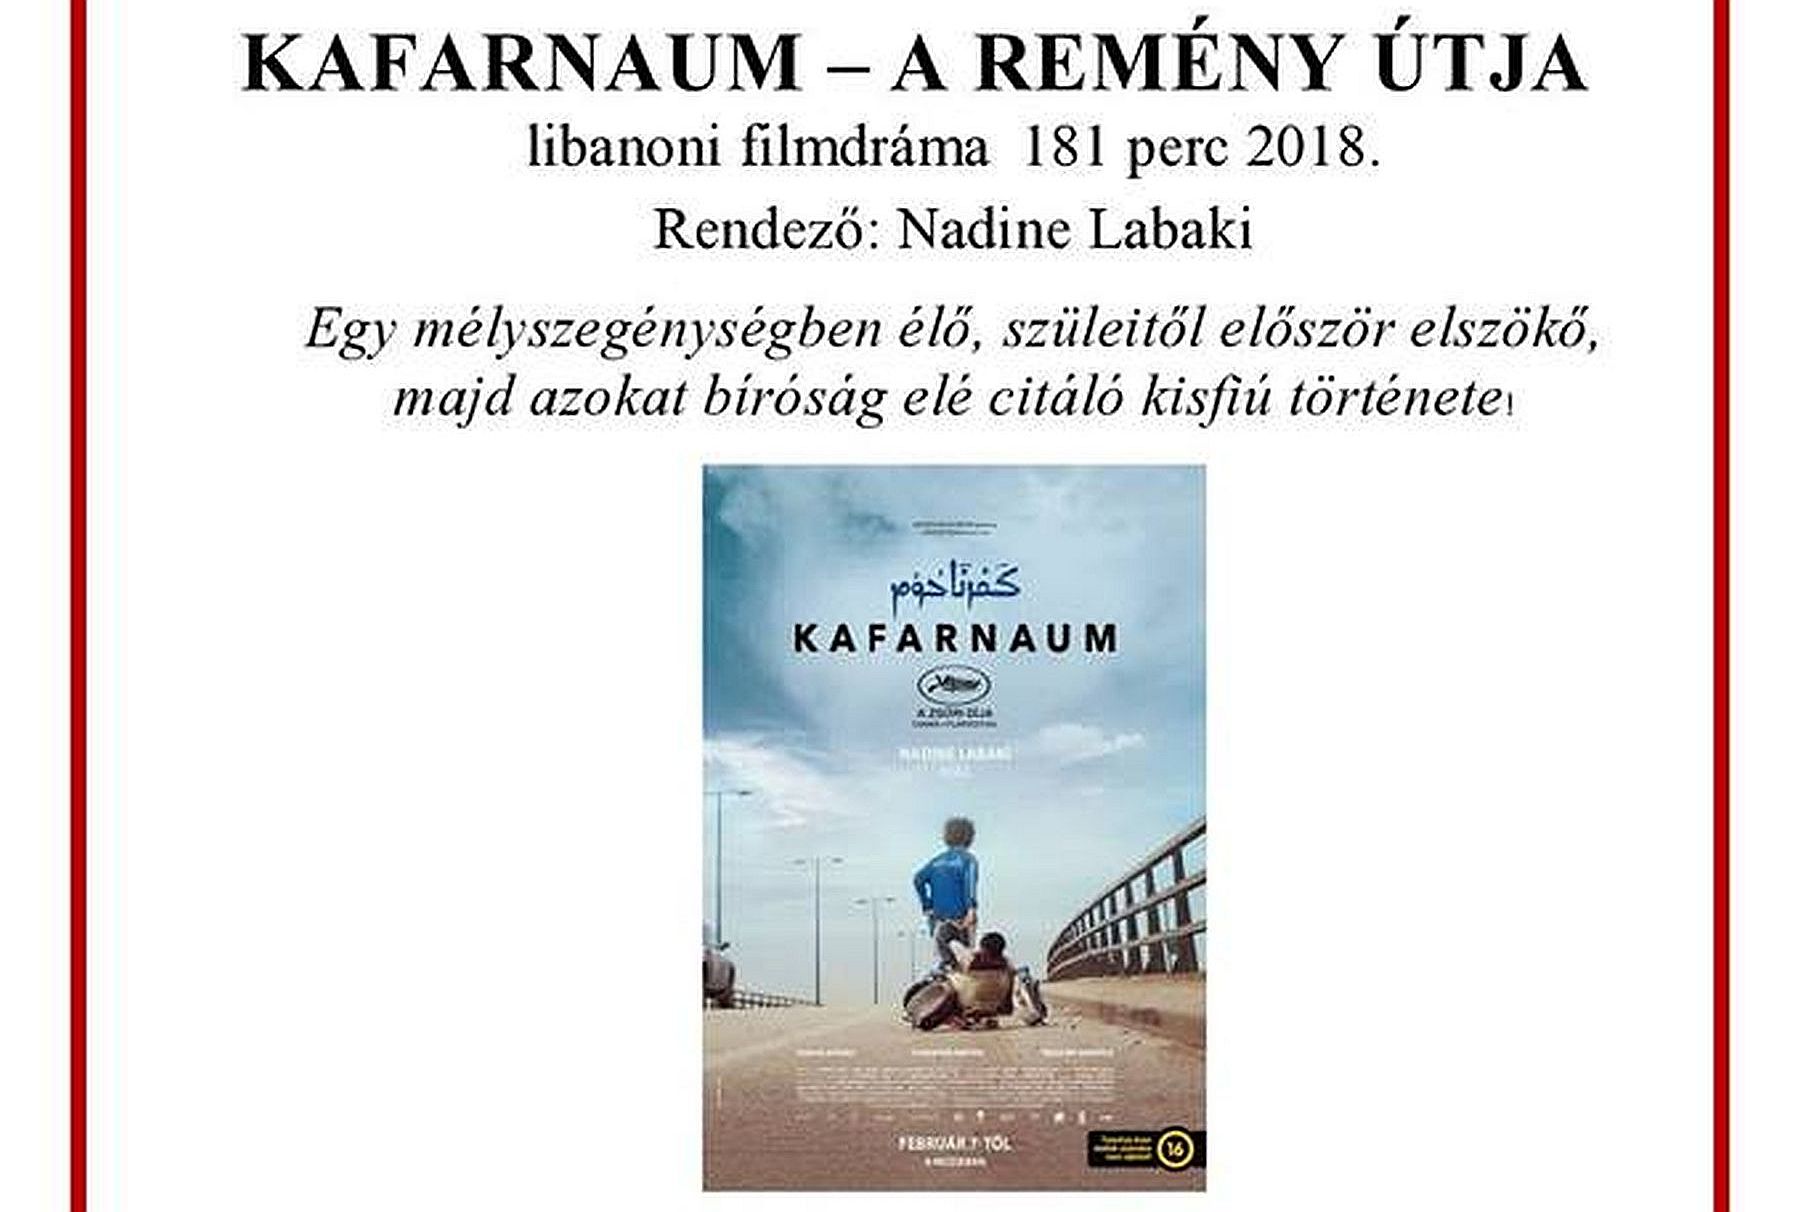 A Kafarnaum - a remény útja című filmet vetítik az Útkereső Filmklubban